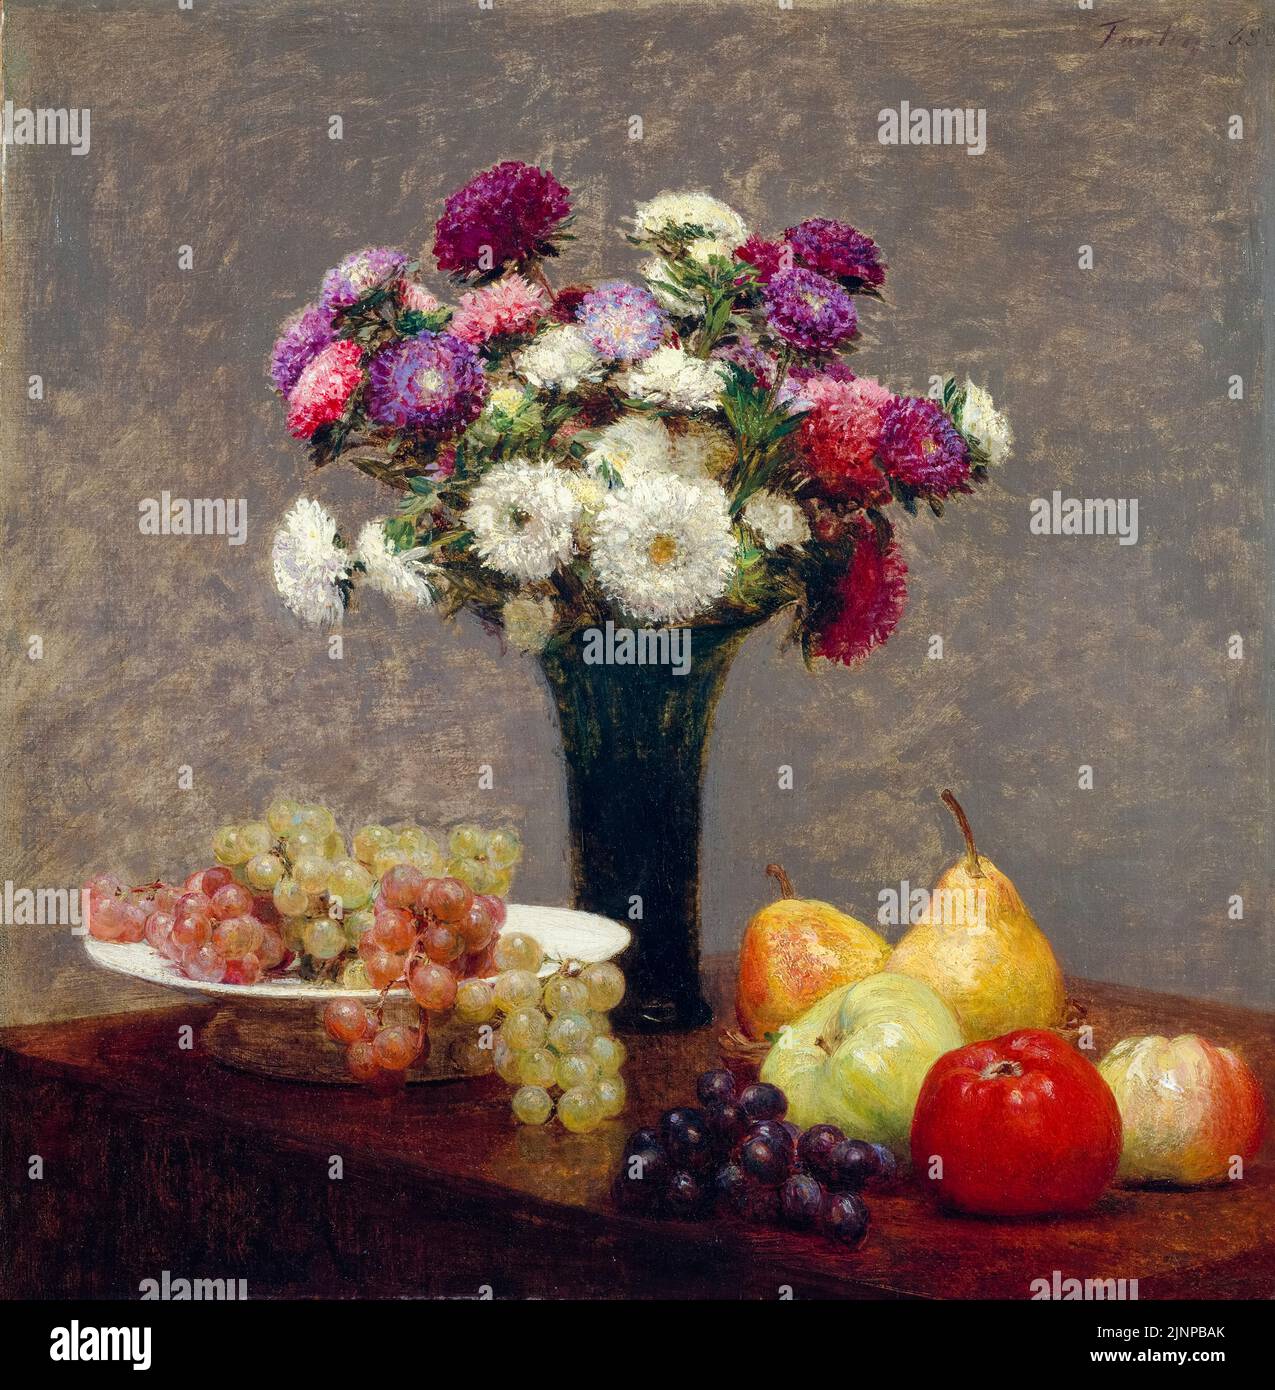 Henri Fantin Latour peinture de la vie, Asters et fruits sur une table, huile sur toile, 1868 Banque D'Images